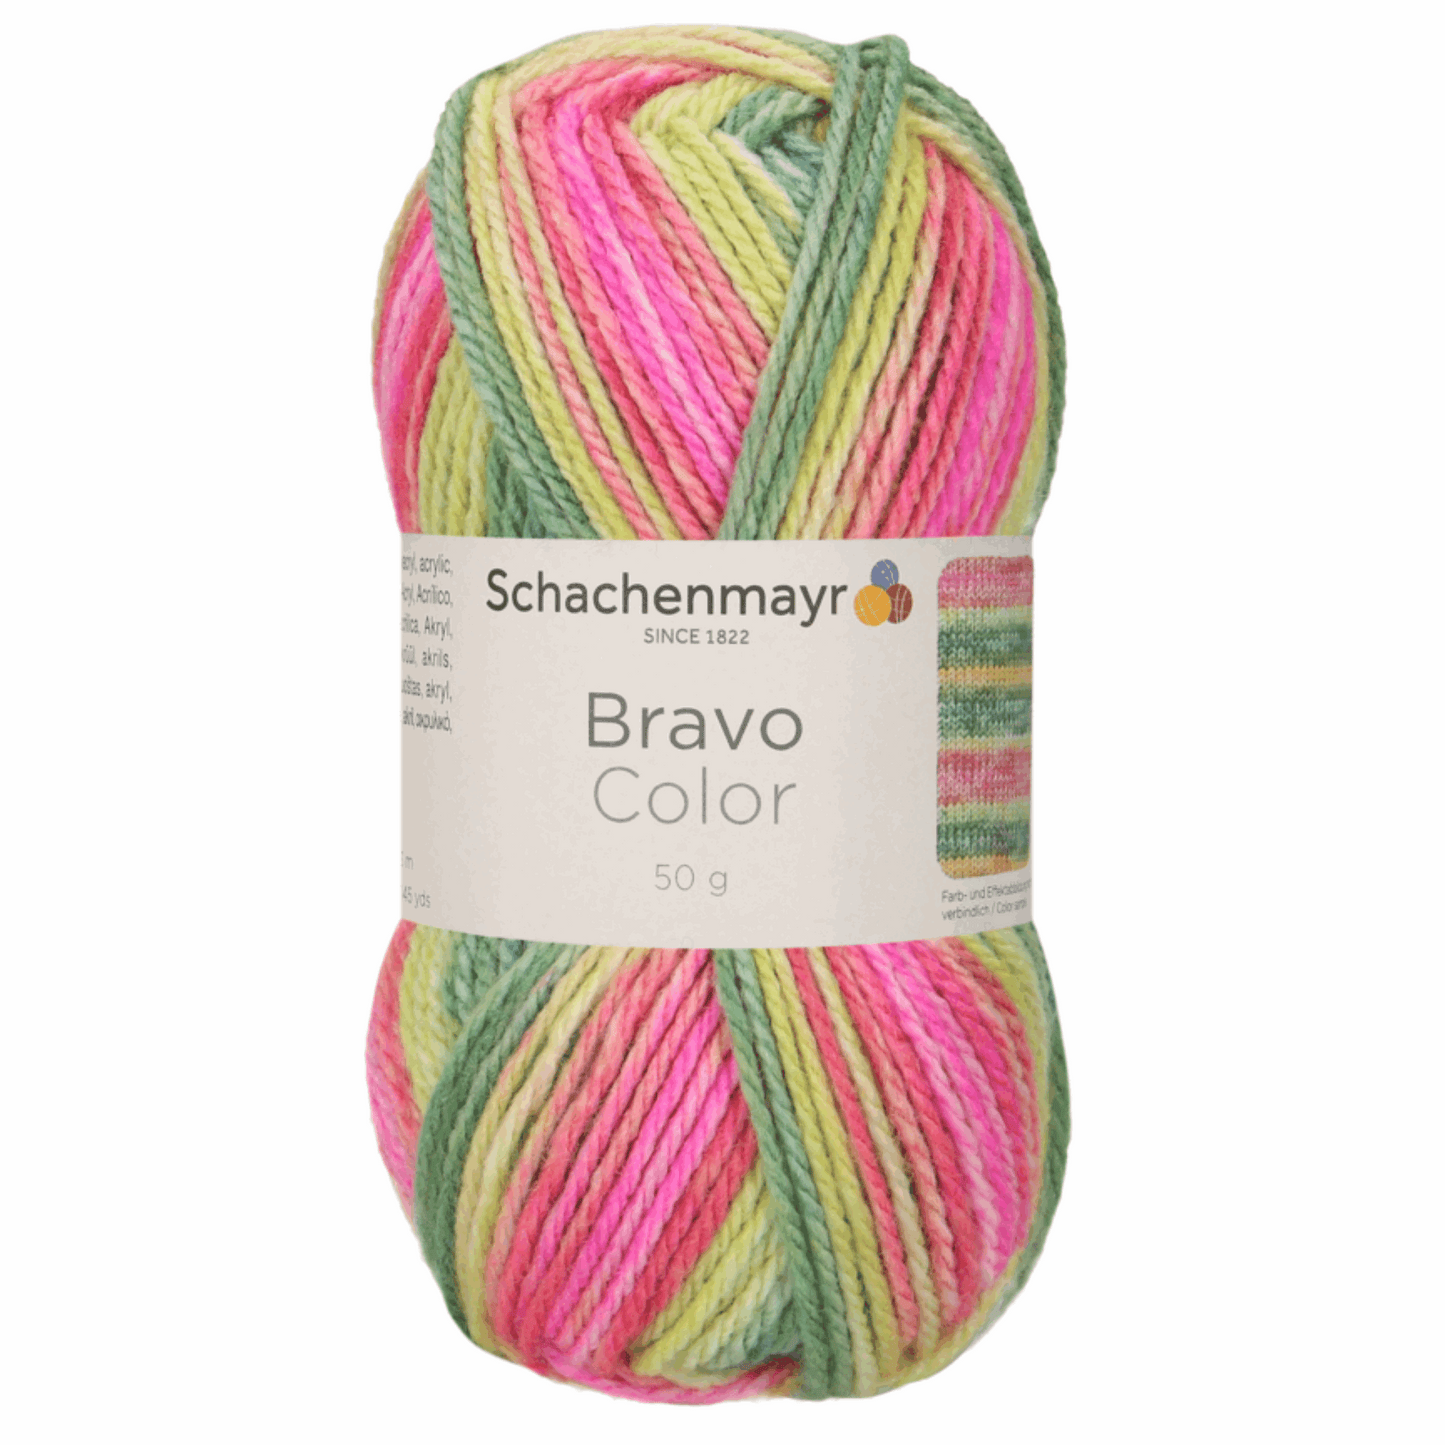 Schachenmayr Bravo50g, 90421, Farbe Wassermelone 2123